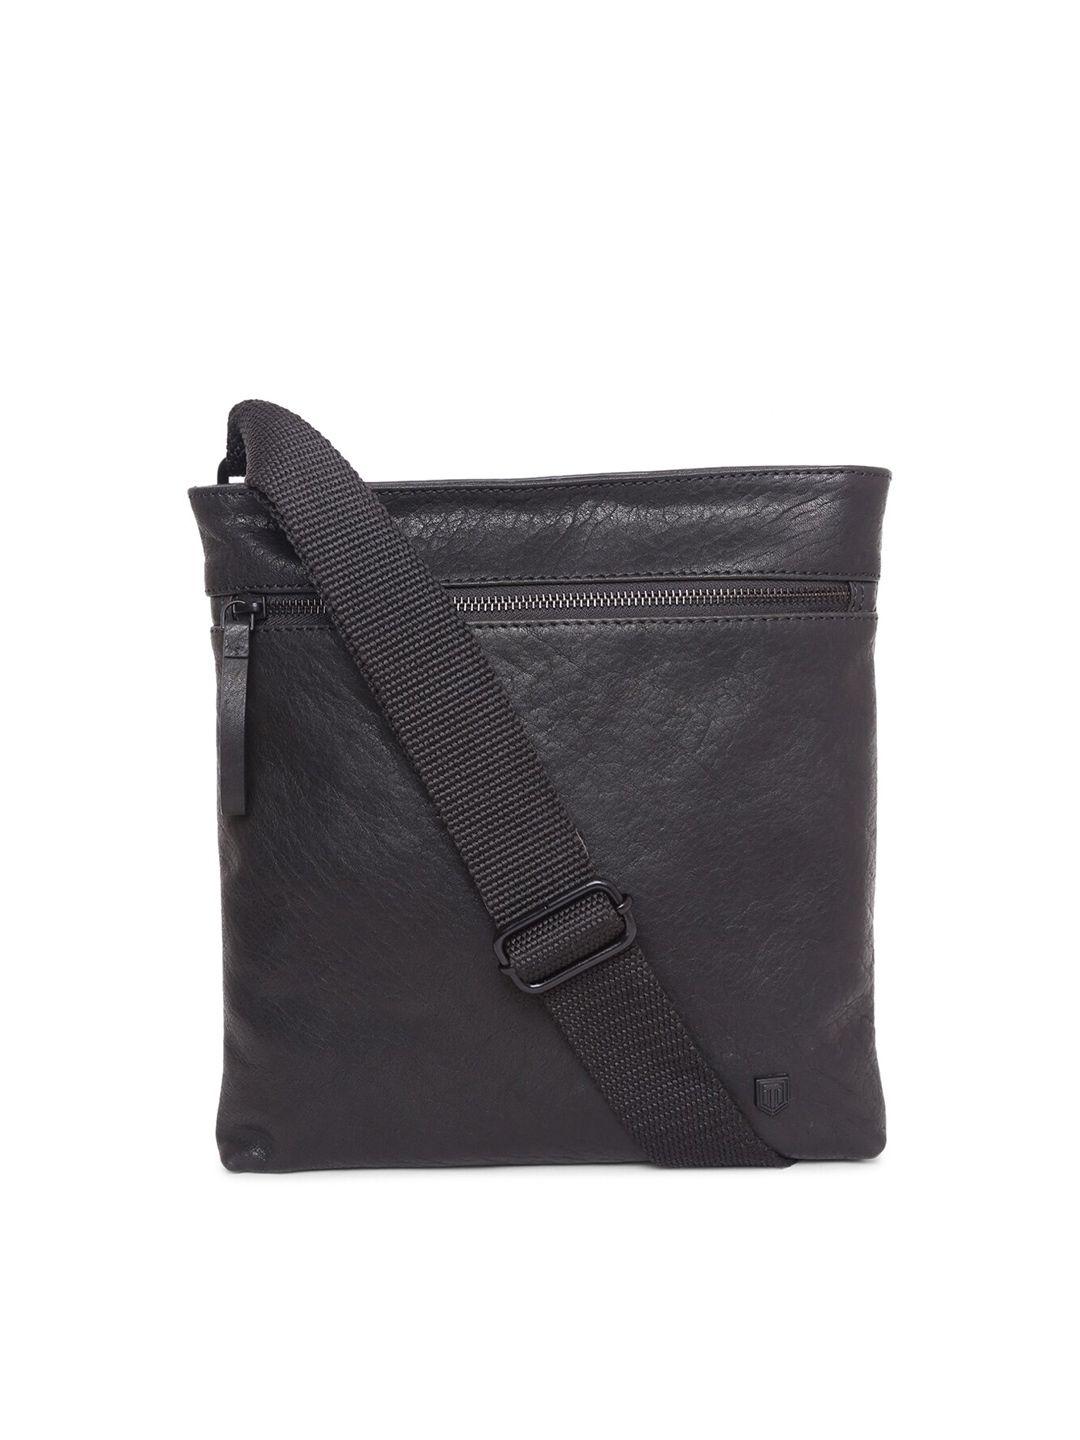 tom lang london detachable sling strap leather messenger bag